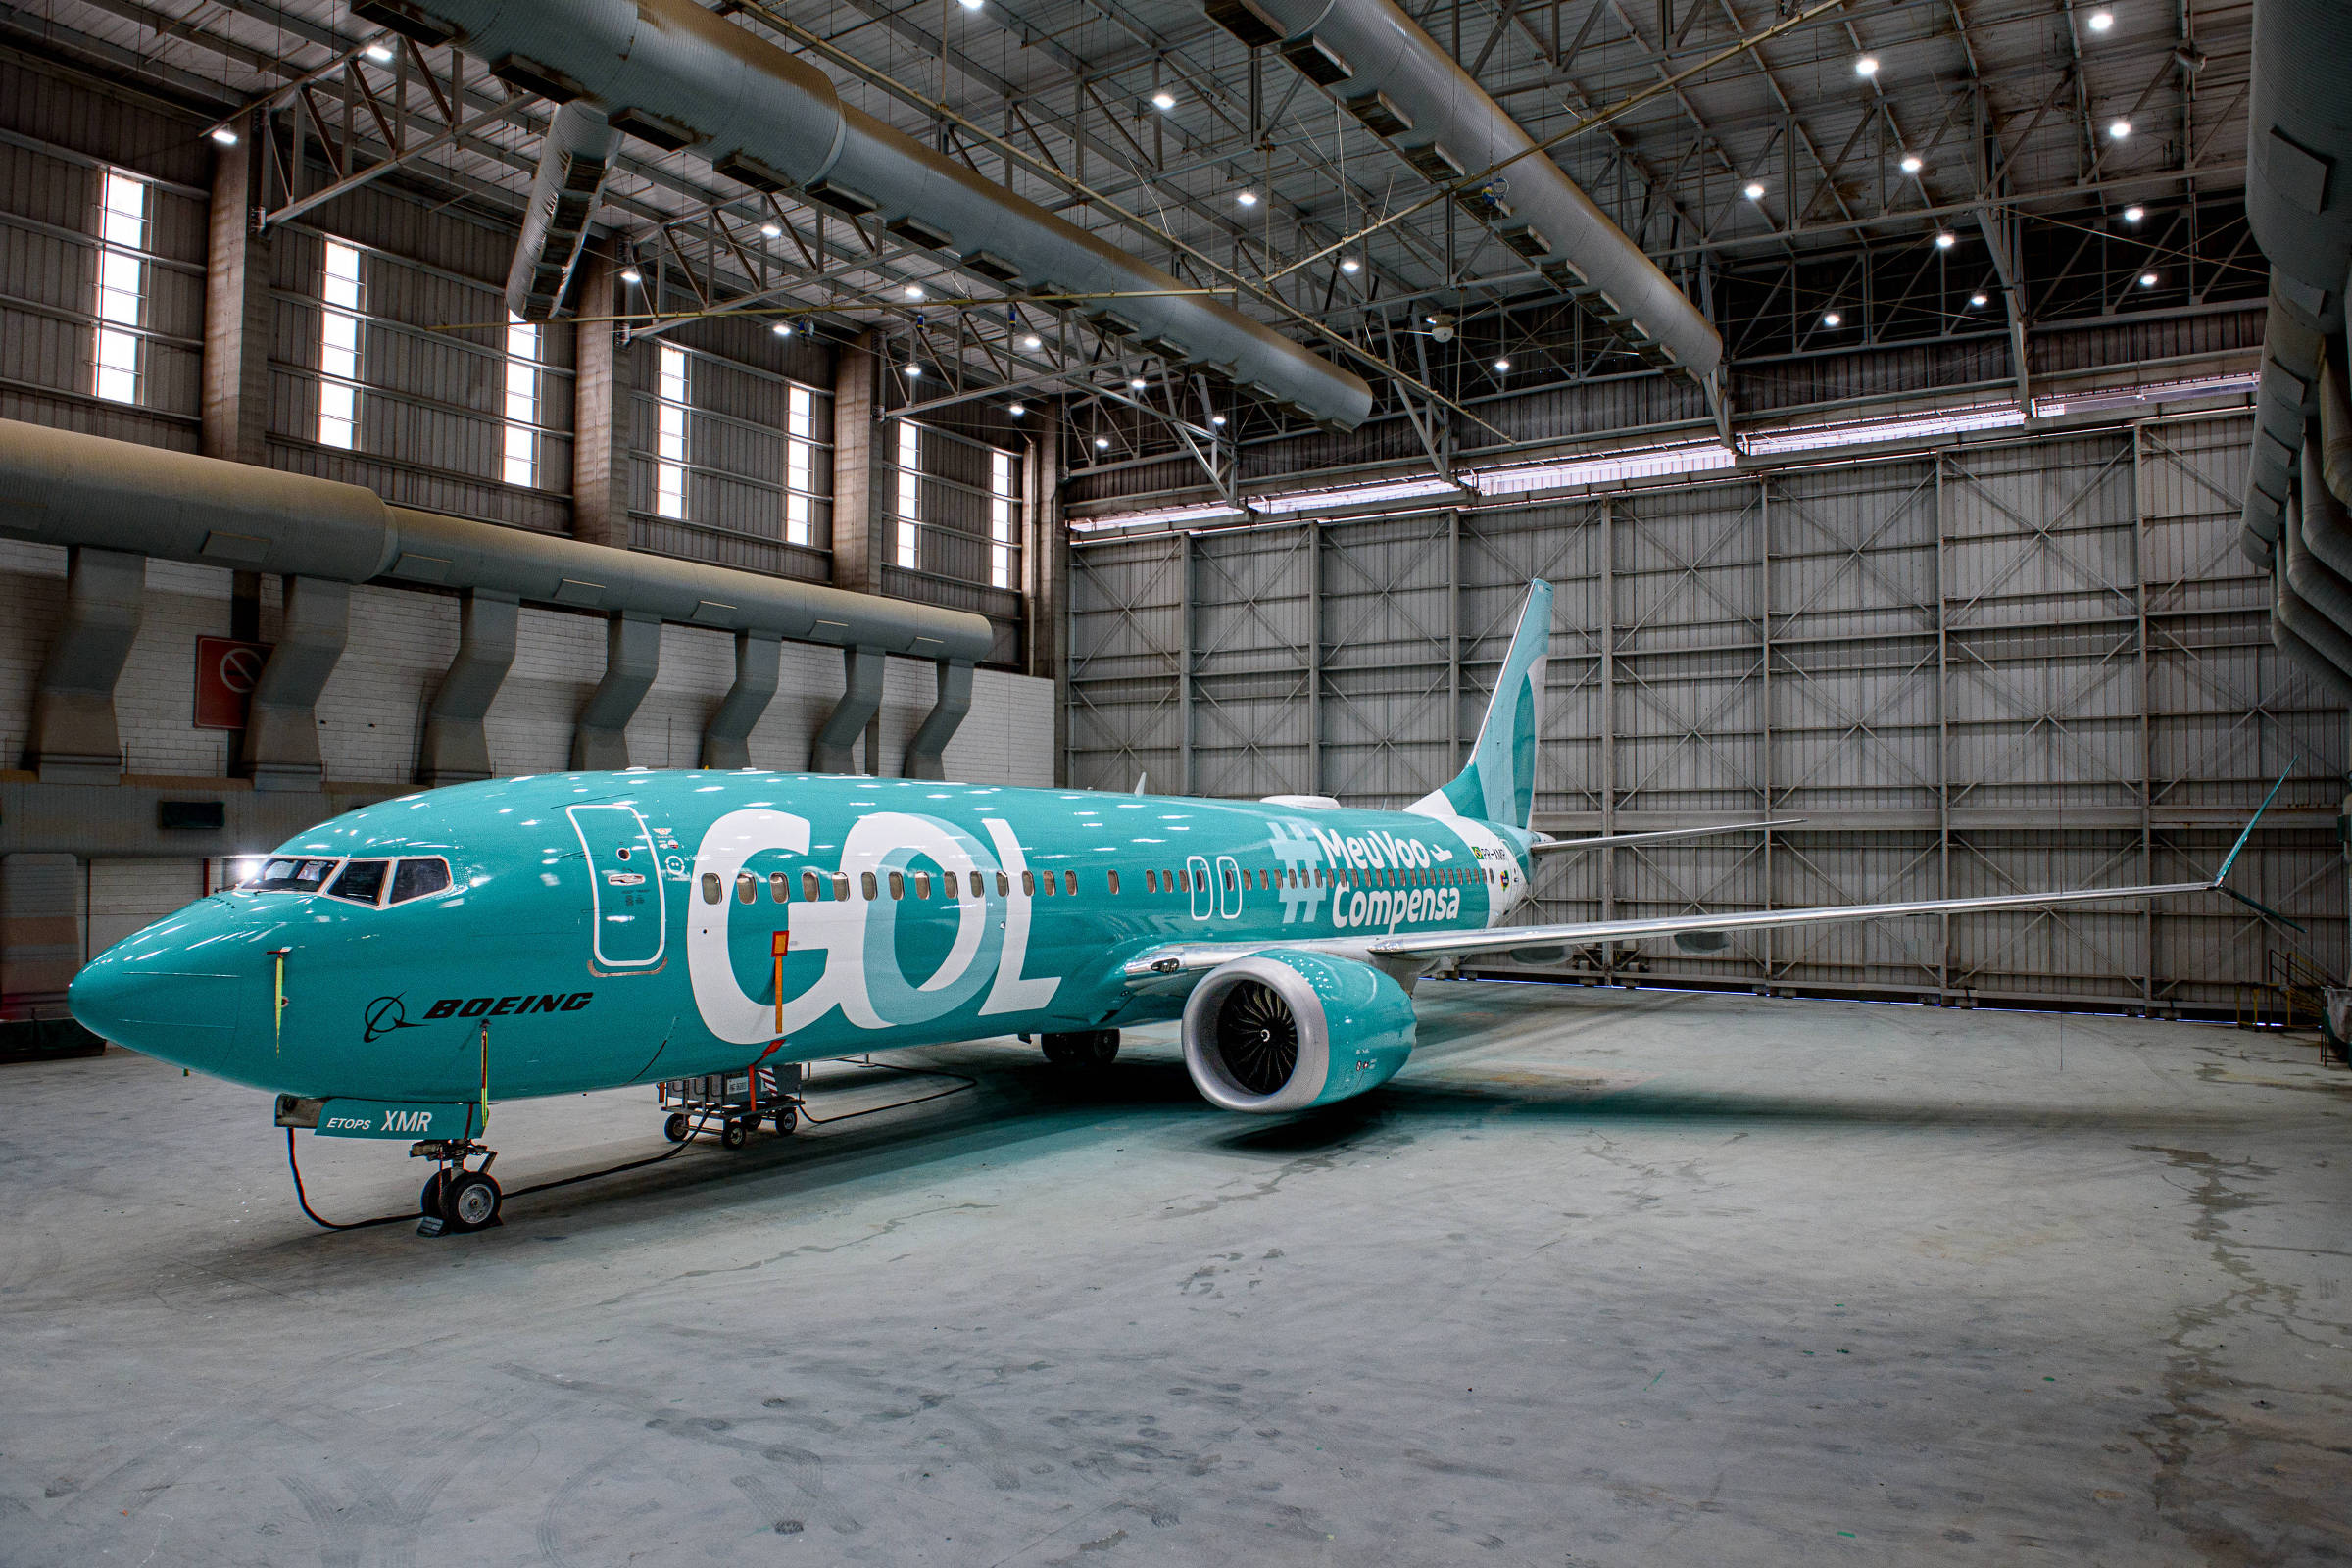 Gol fecha acordo com Boeing e cancela pedidos de aviões